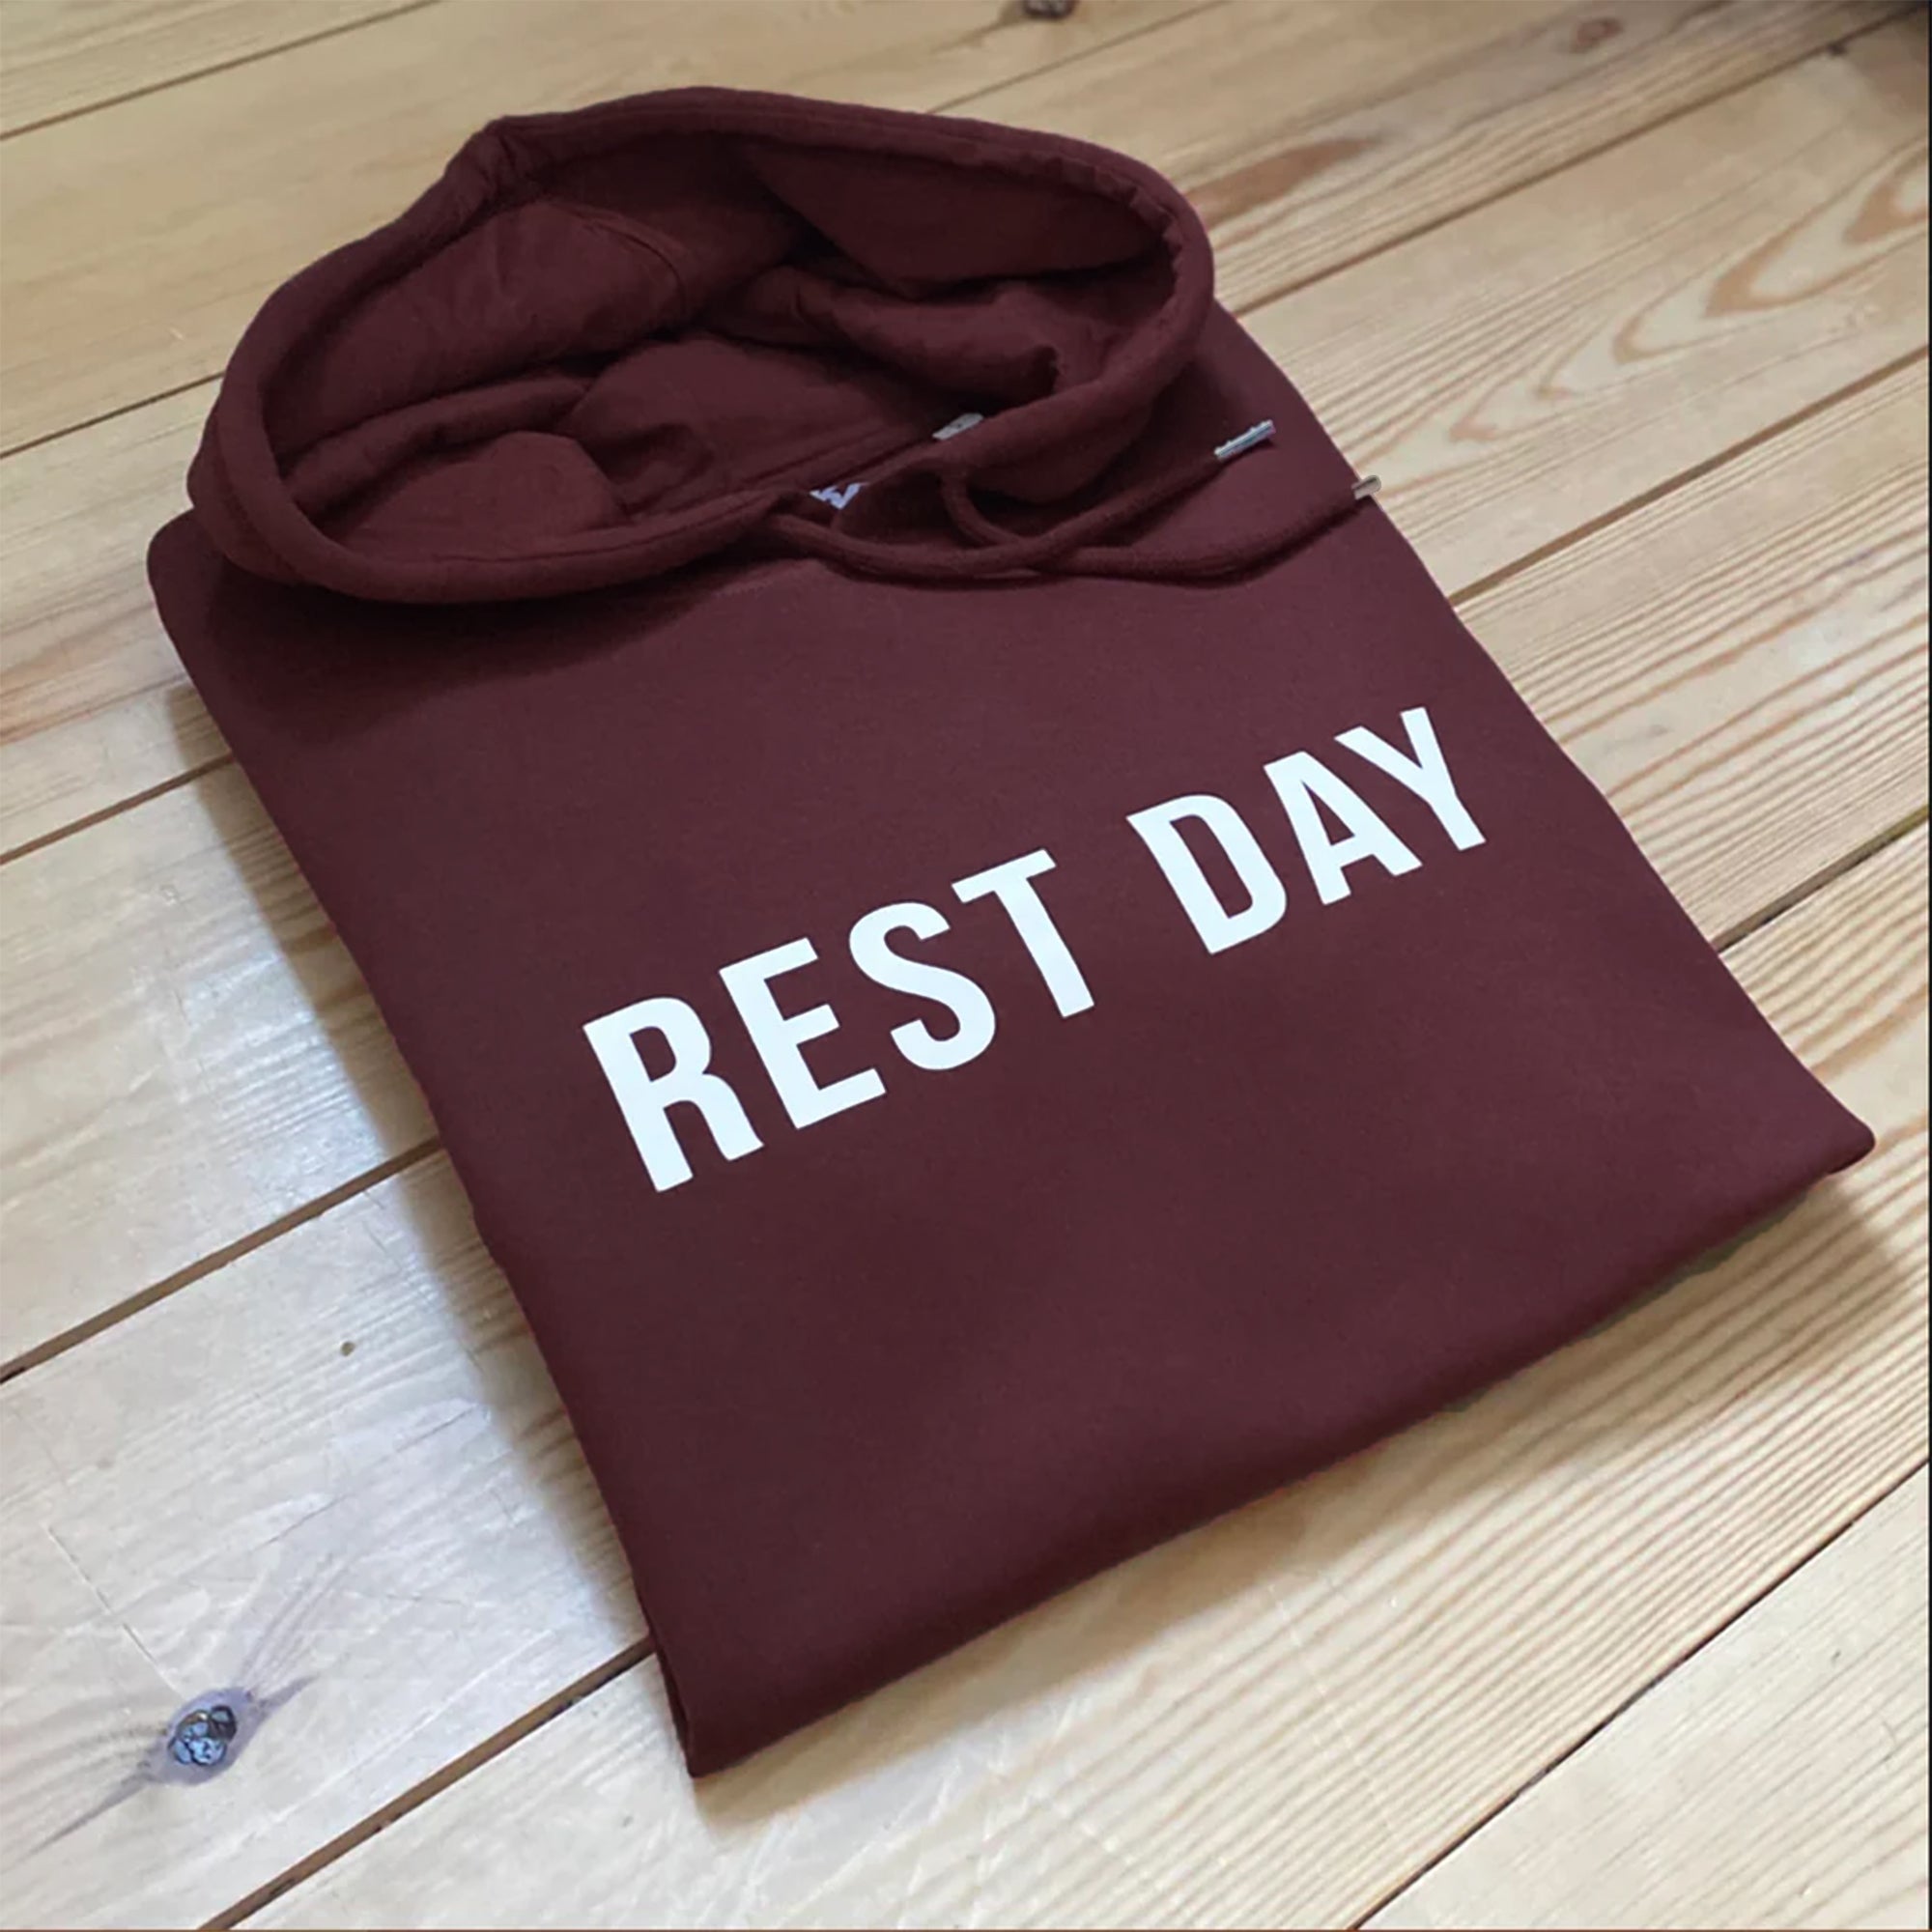 Rest Day Hoodie - printed